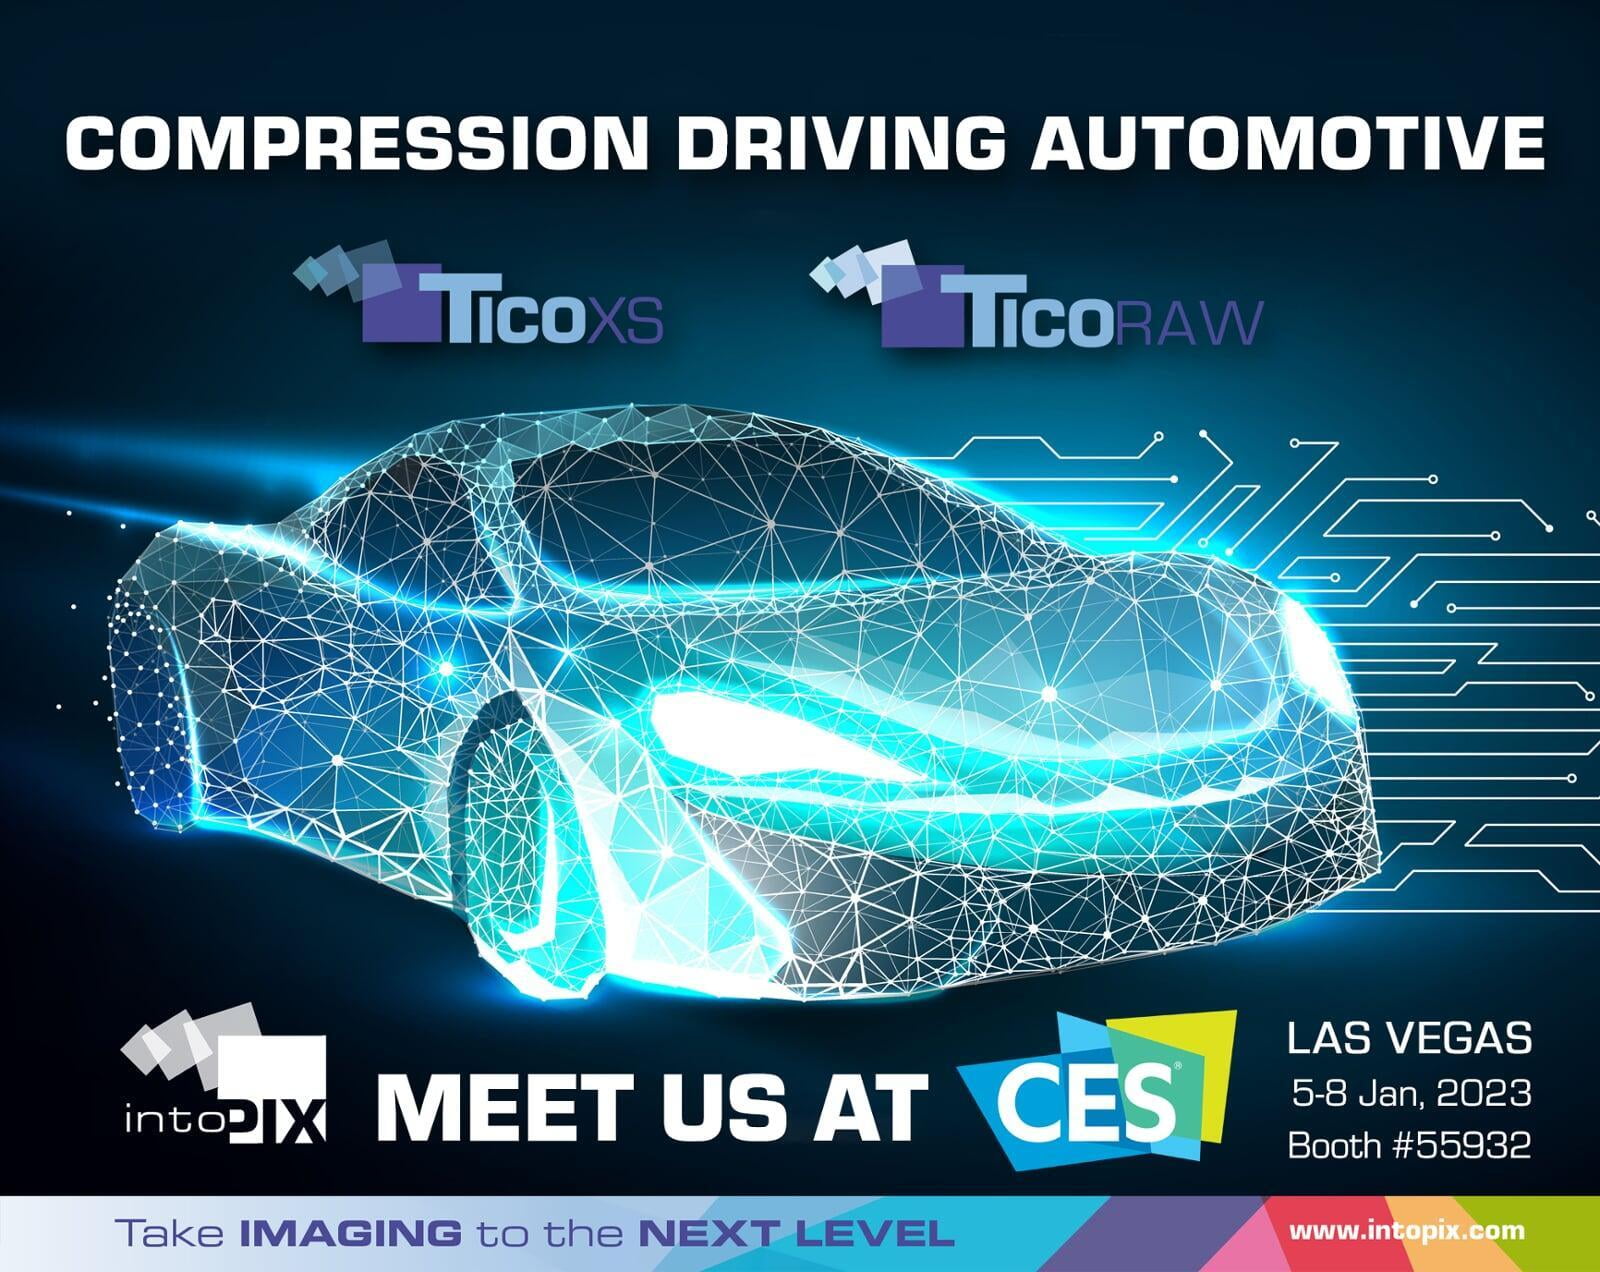 intoPIX montre les nouvelles normes et technologies de compression vidéo légère qui font avancer le secteur automobile sur CES 2023.